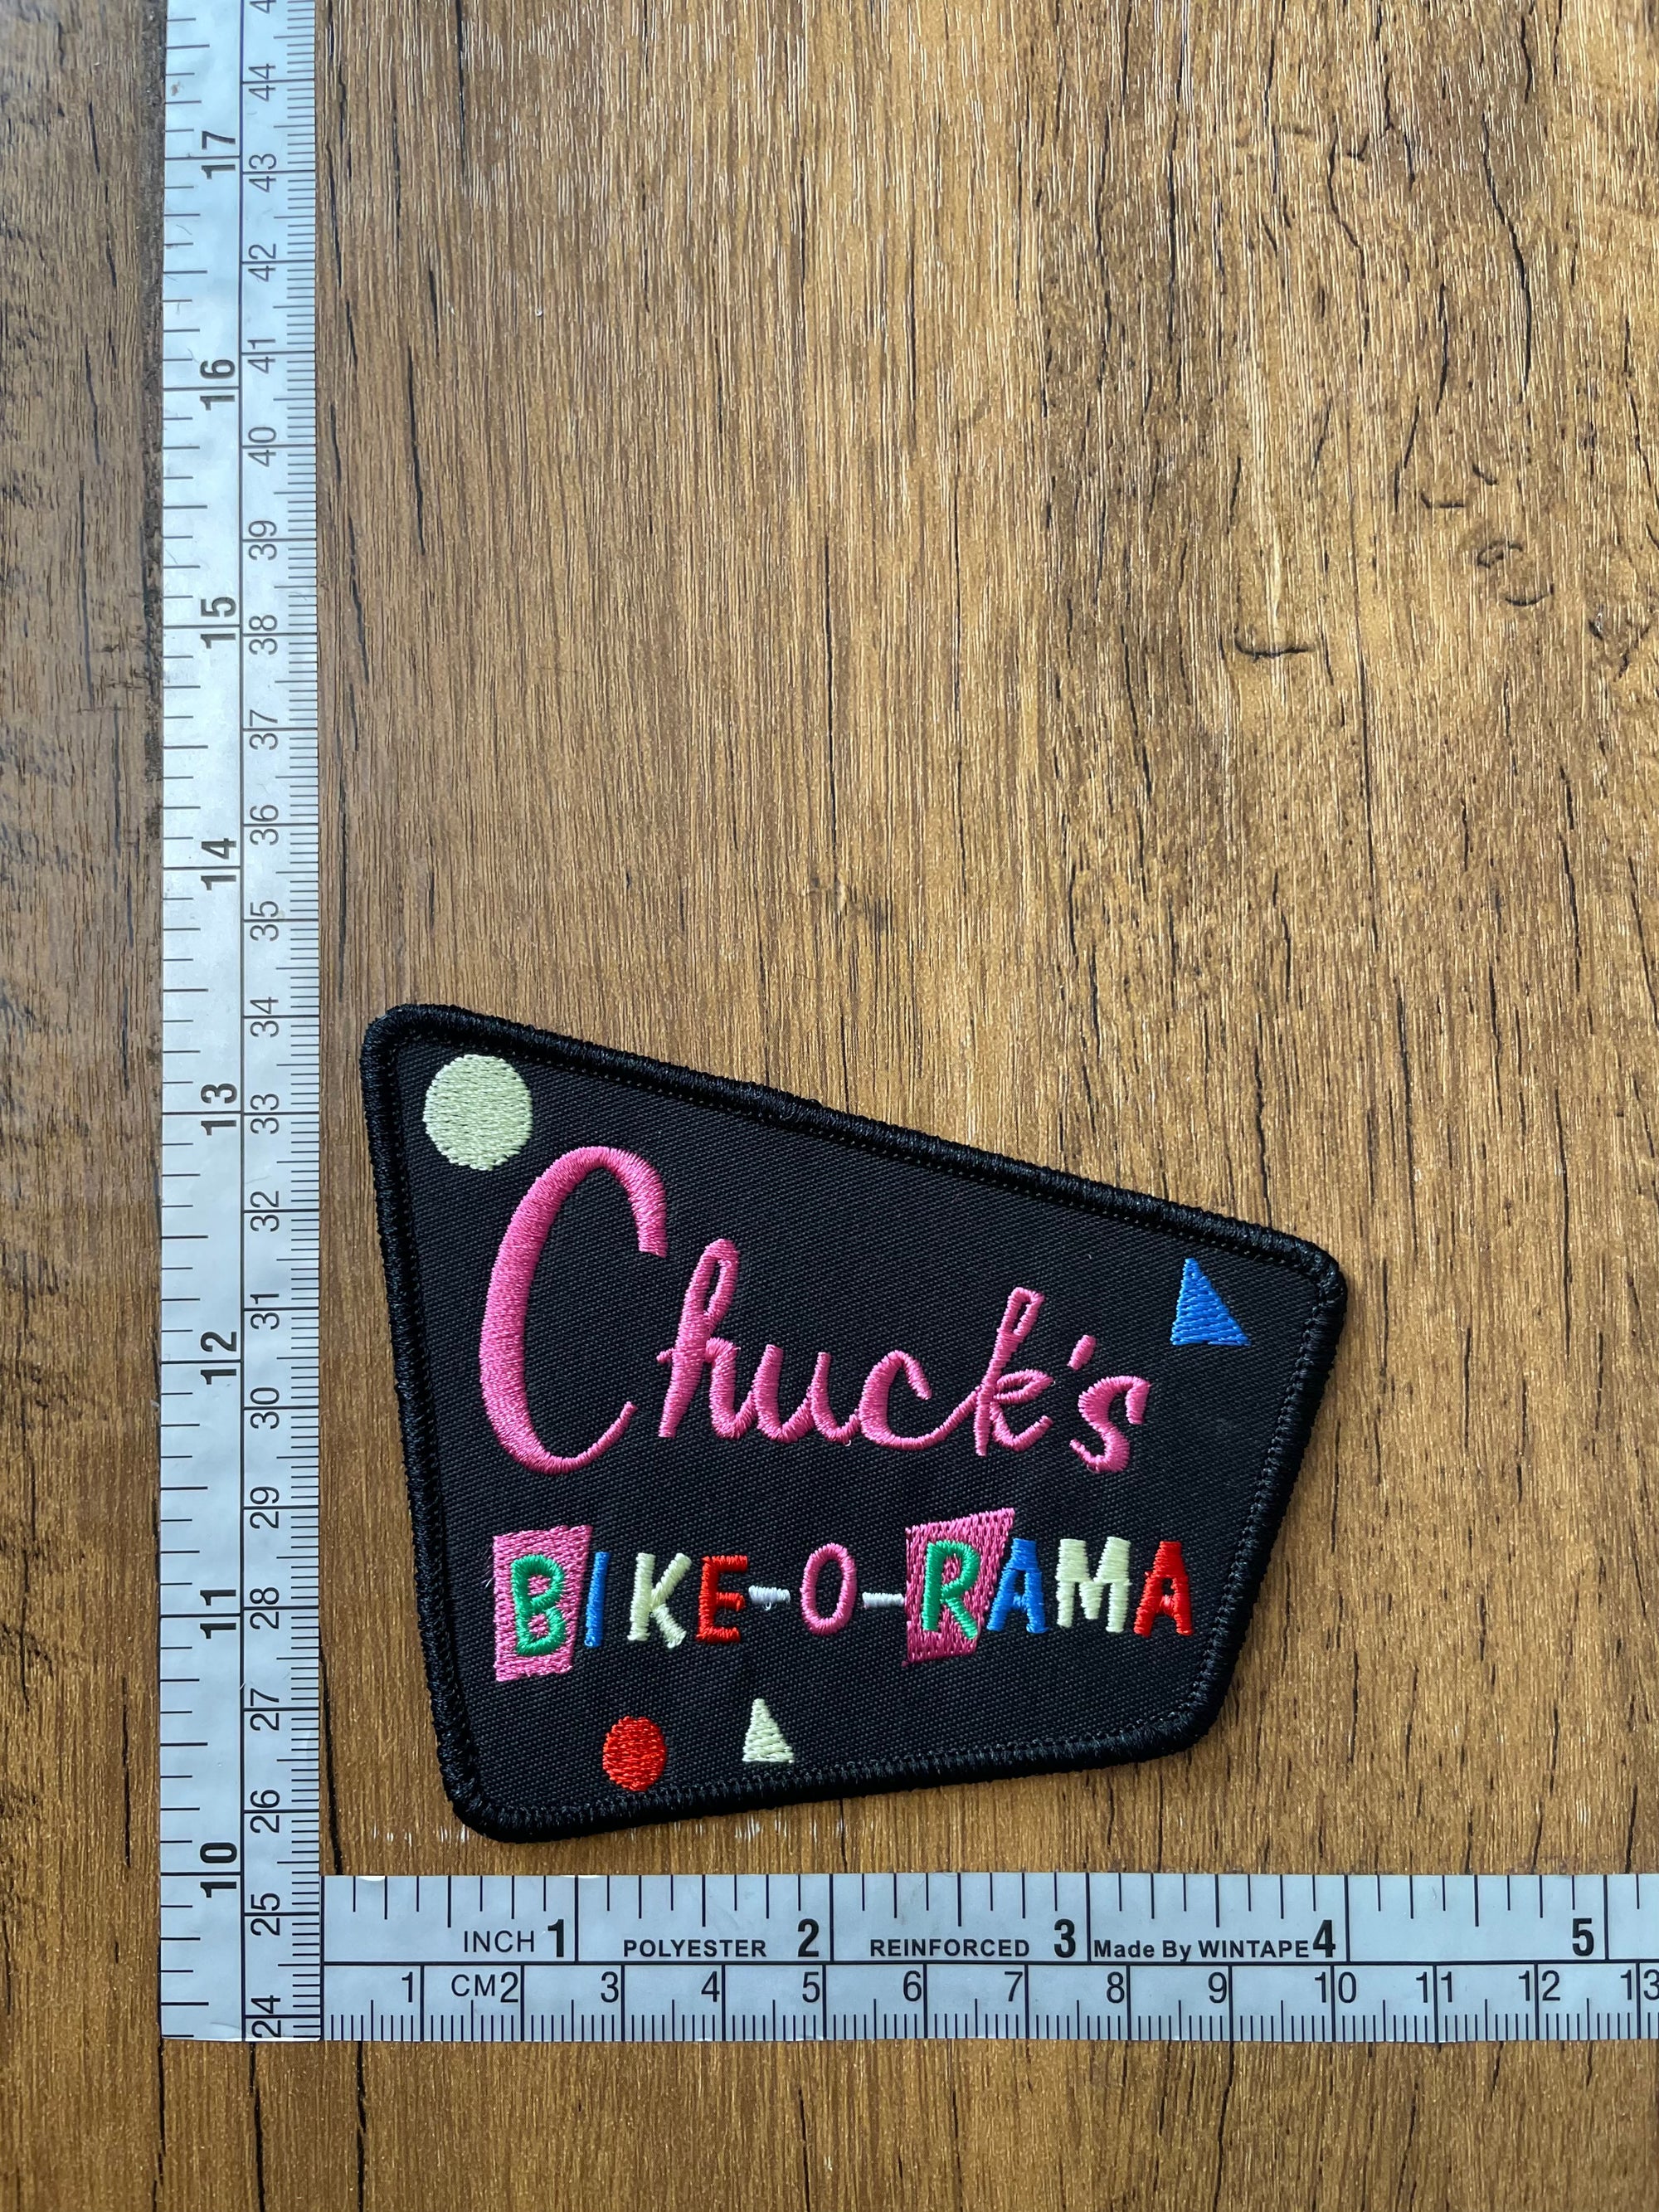 Chuck’s Bike-O-Rama